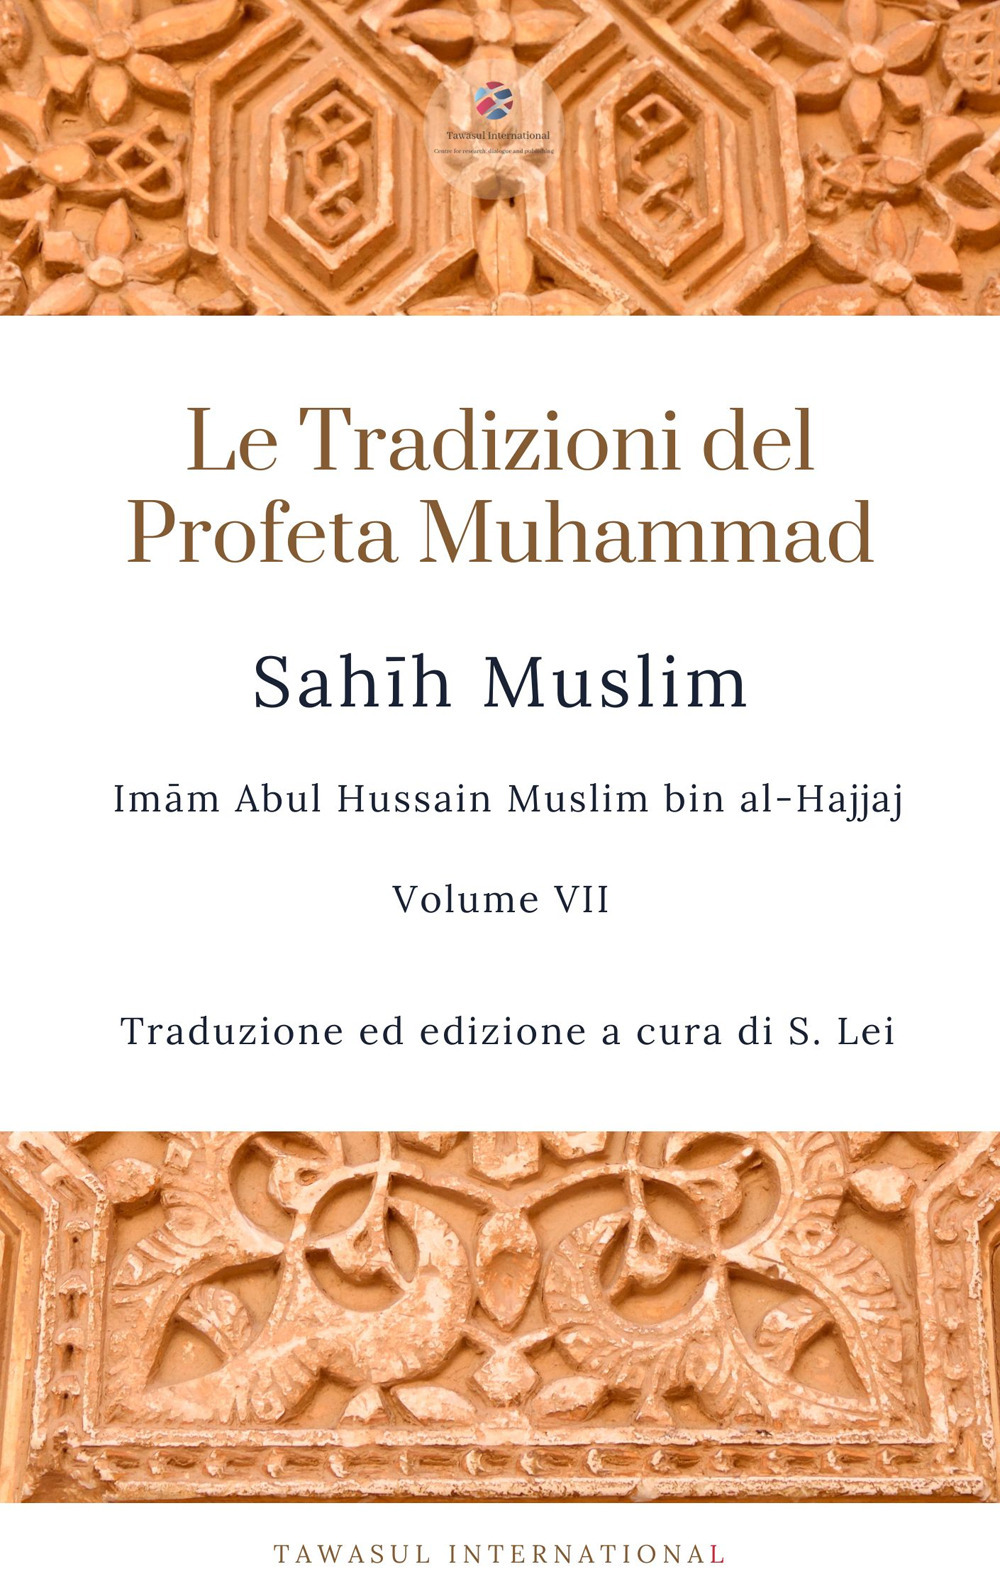 Sahih Muslim. Vol. 7